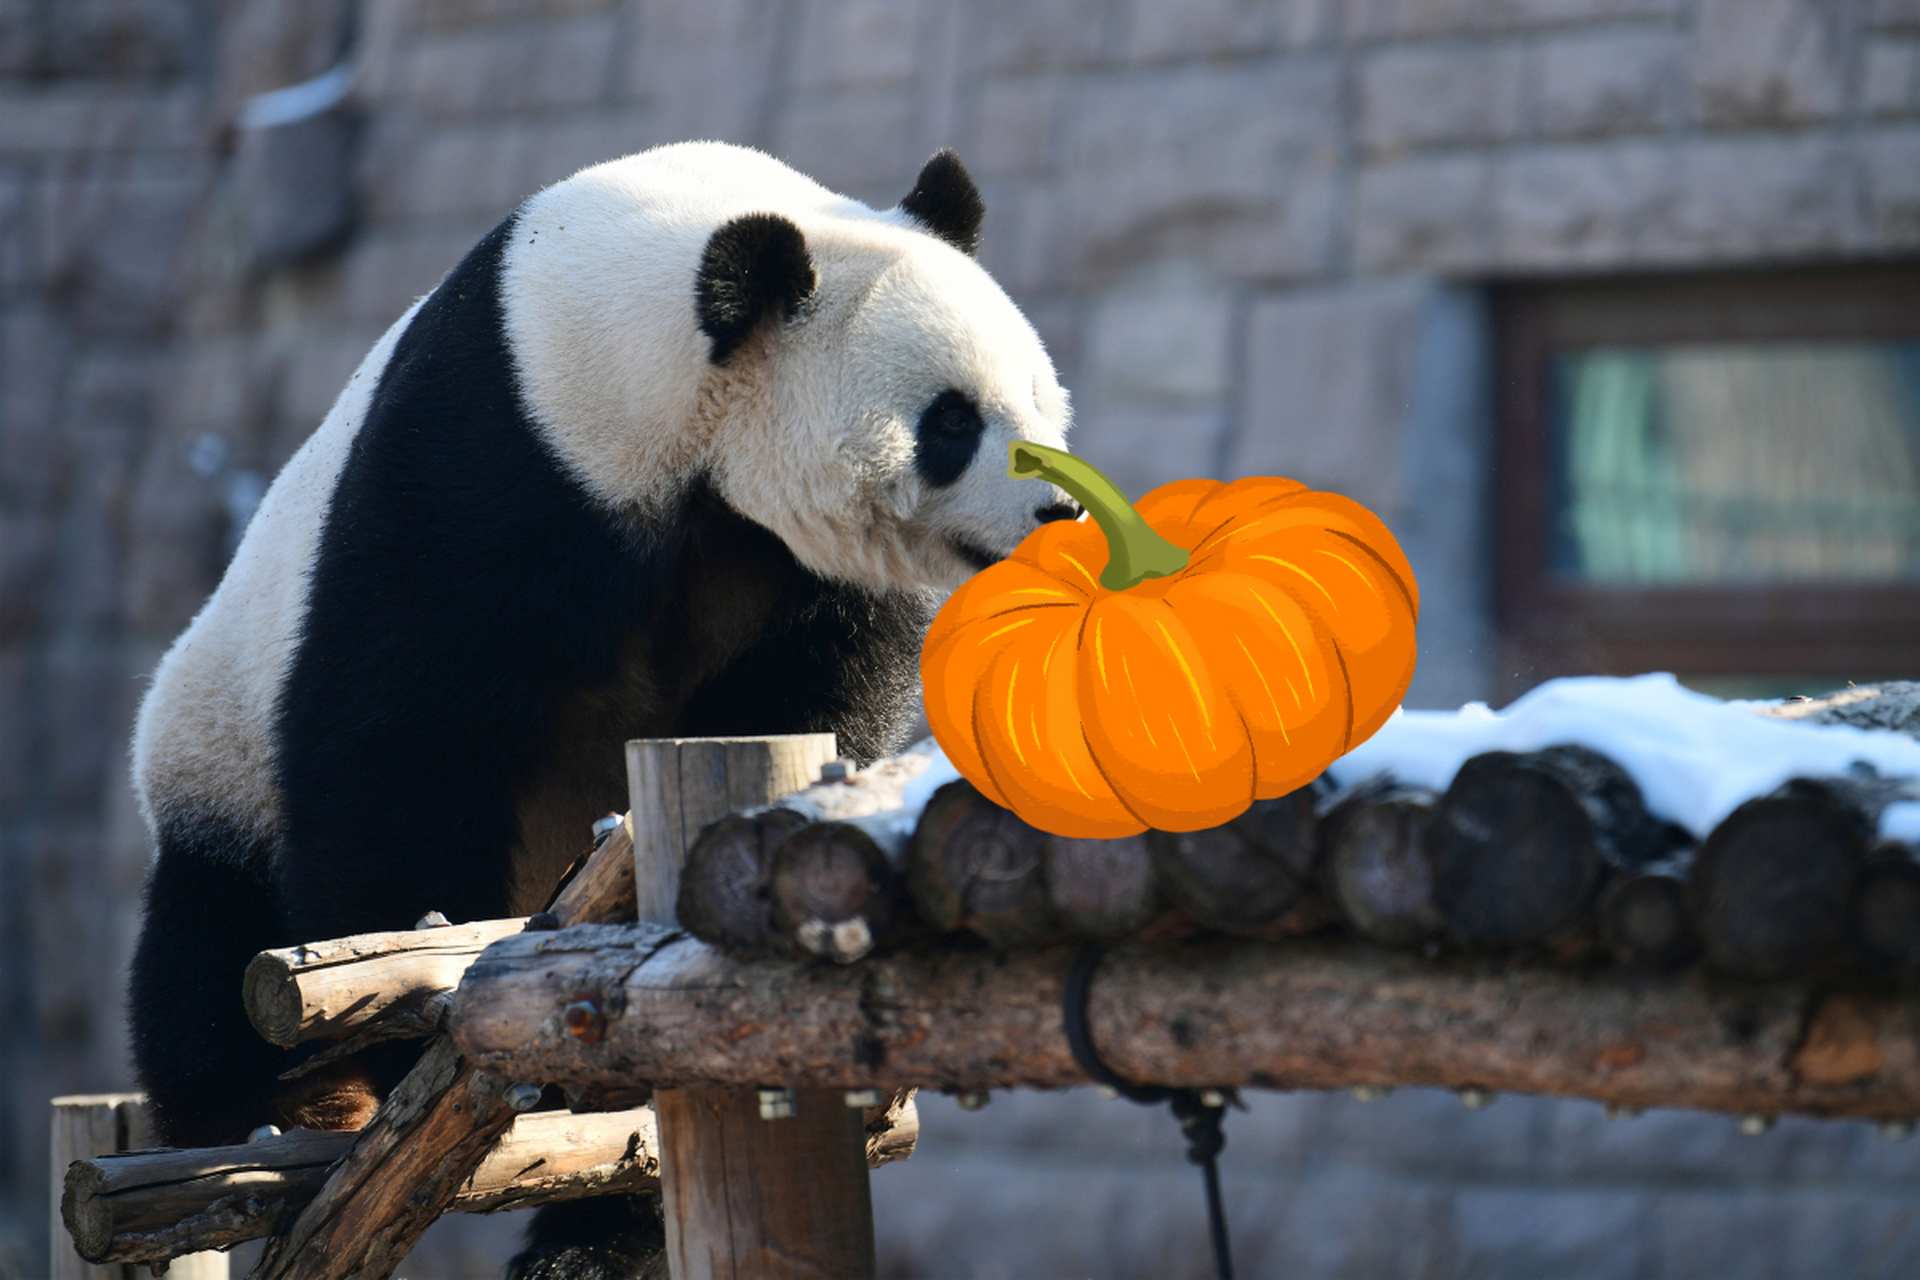 福州动物园熊猫馆门票图片